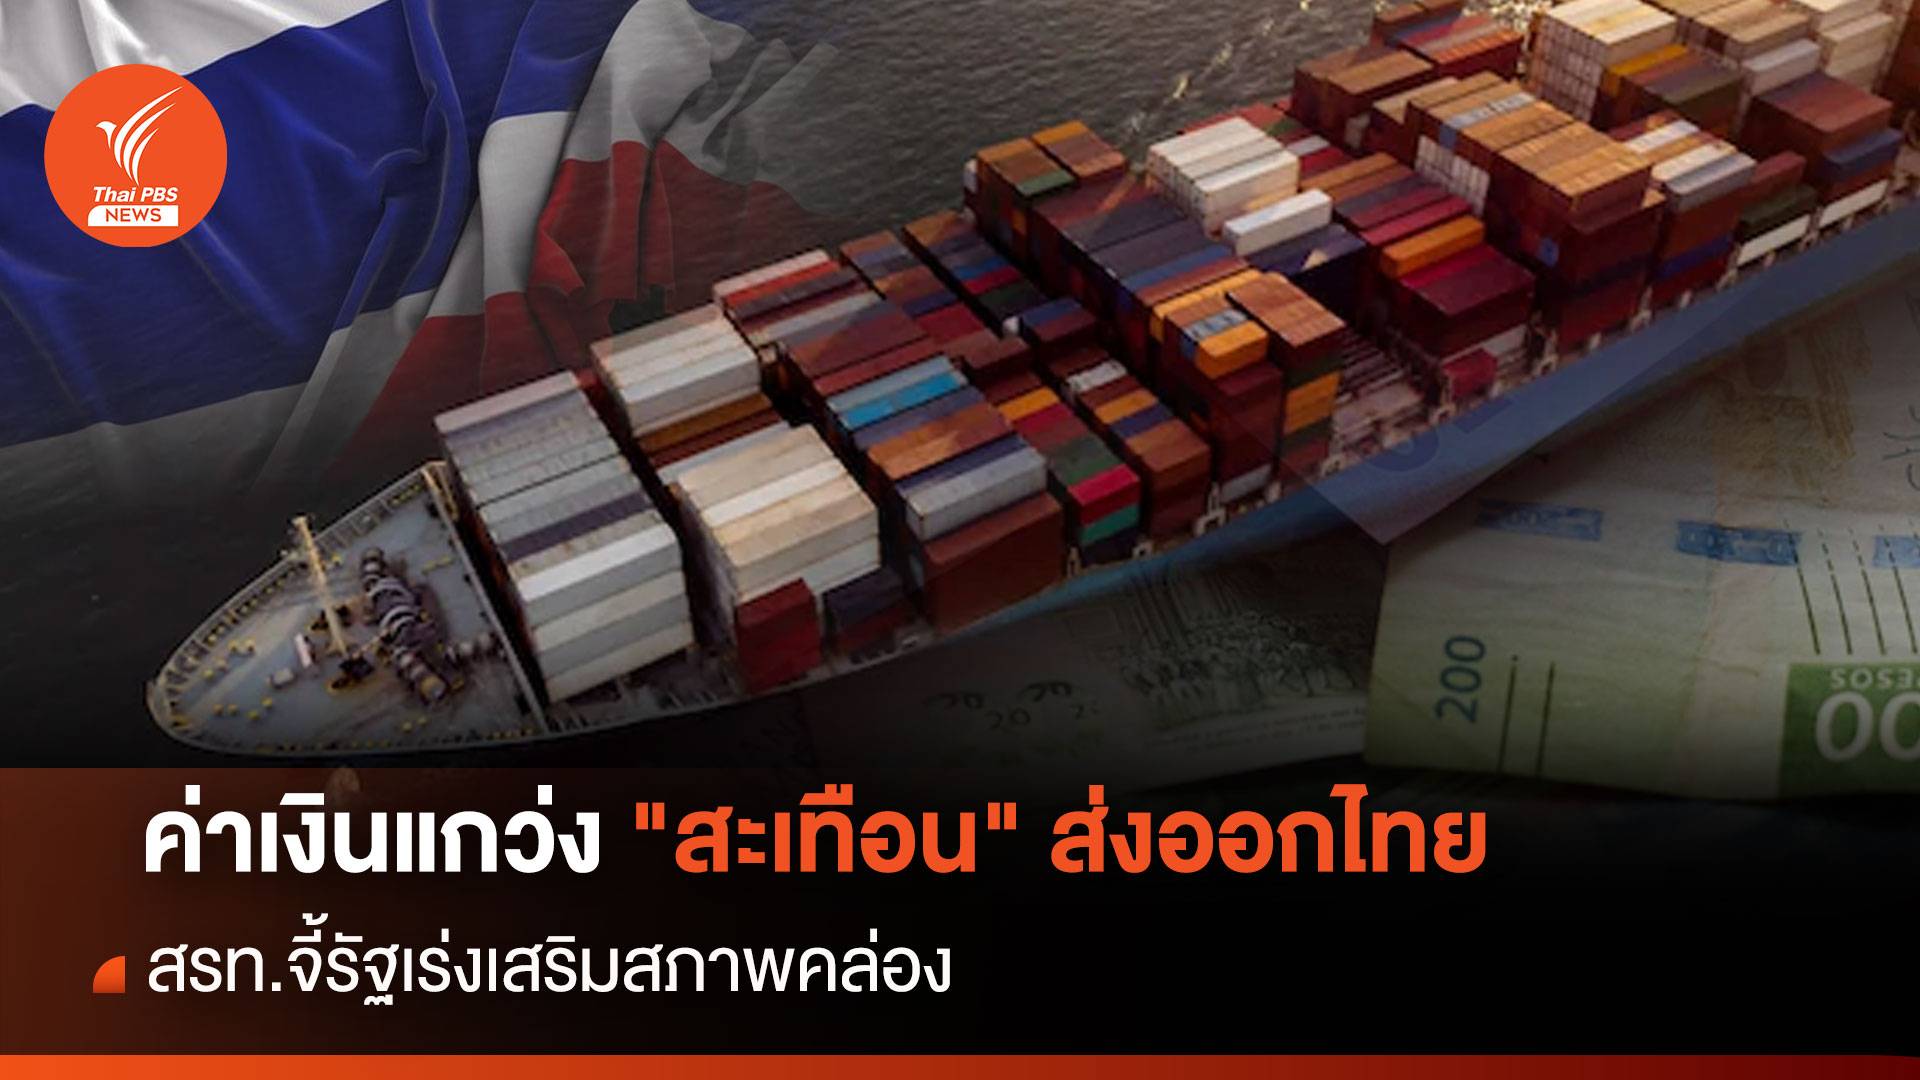 ค่าเงินแกว่ง "สะเทือน" ส่งออกไทย  สรท.จี้รัฐเร่งเสริมสภาพคล่อง